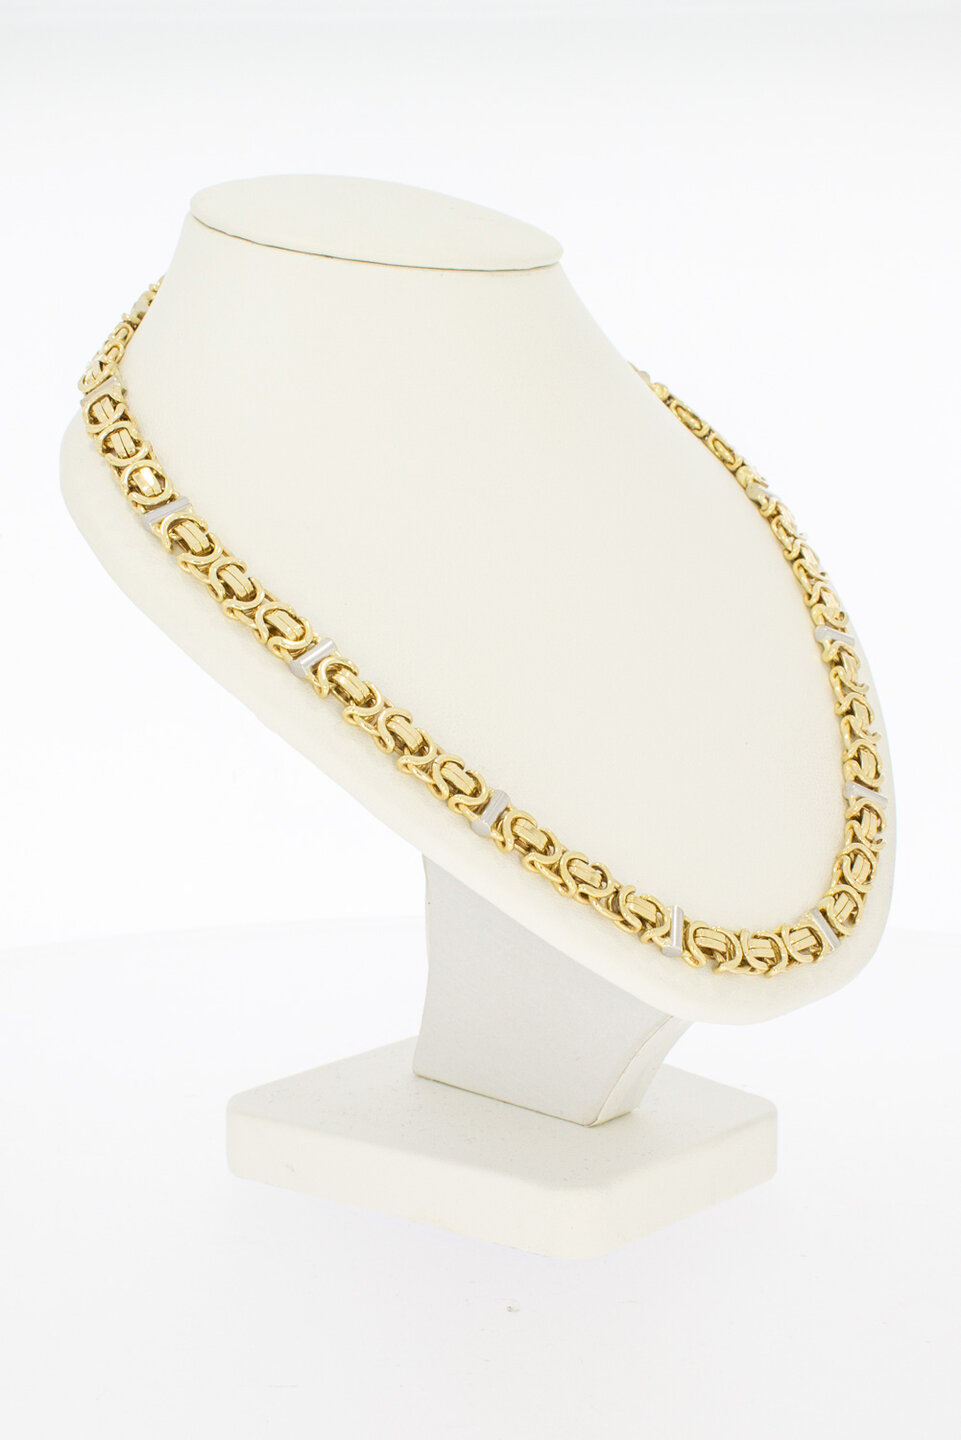 Flache Königskette 14 Karat Gold – 47,5 cm